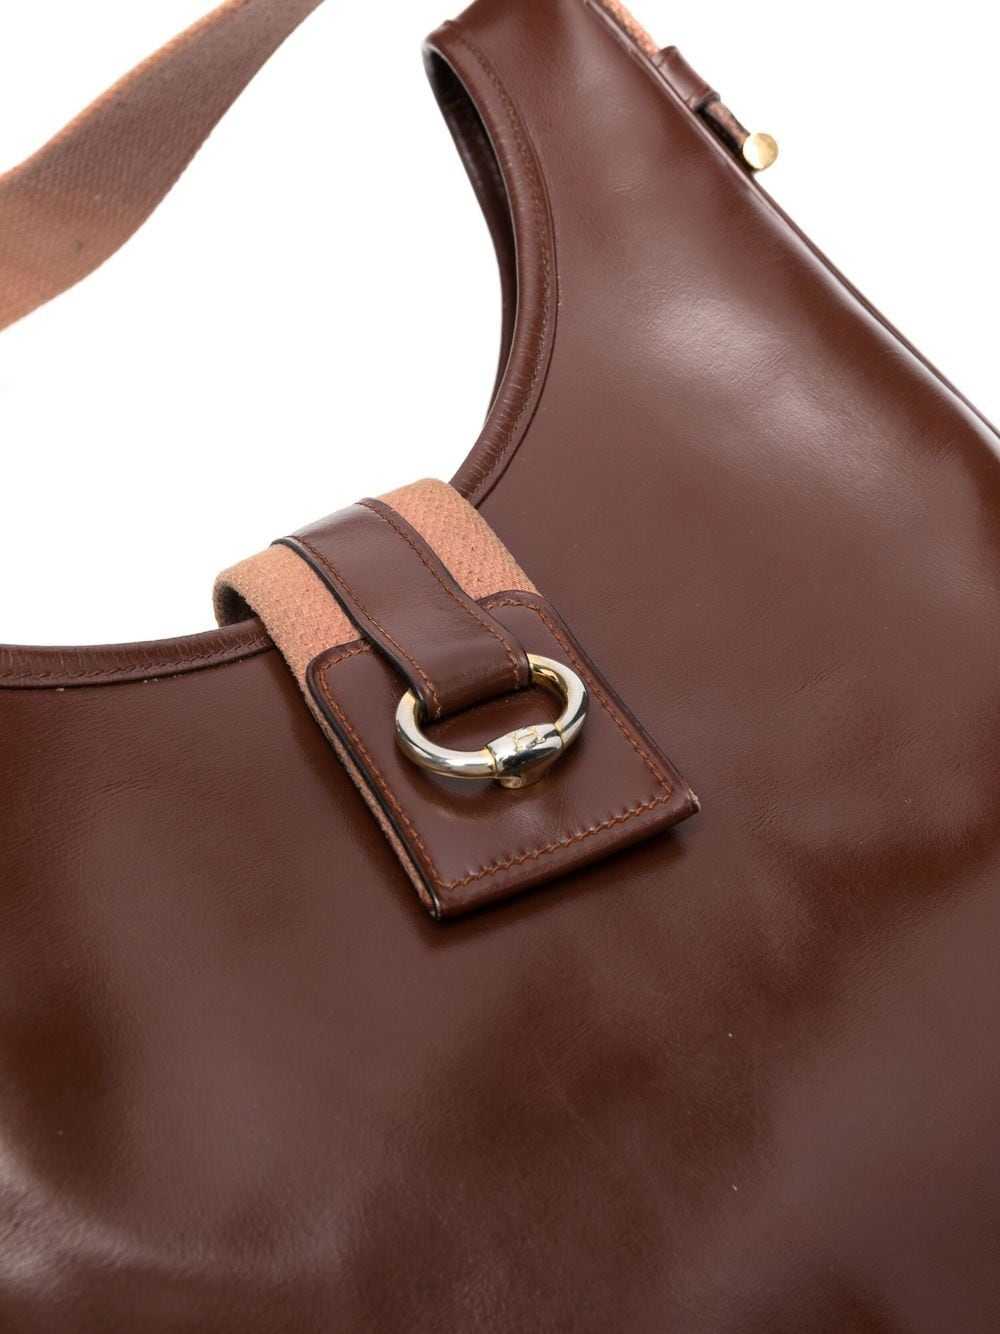 Hermès Pre-Owned 1981 tote bag - Brown - image 4